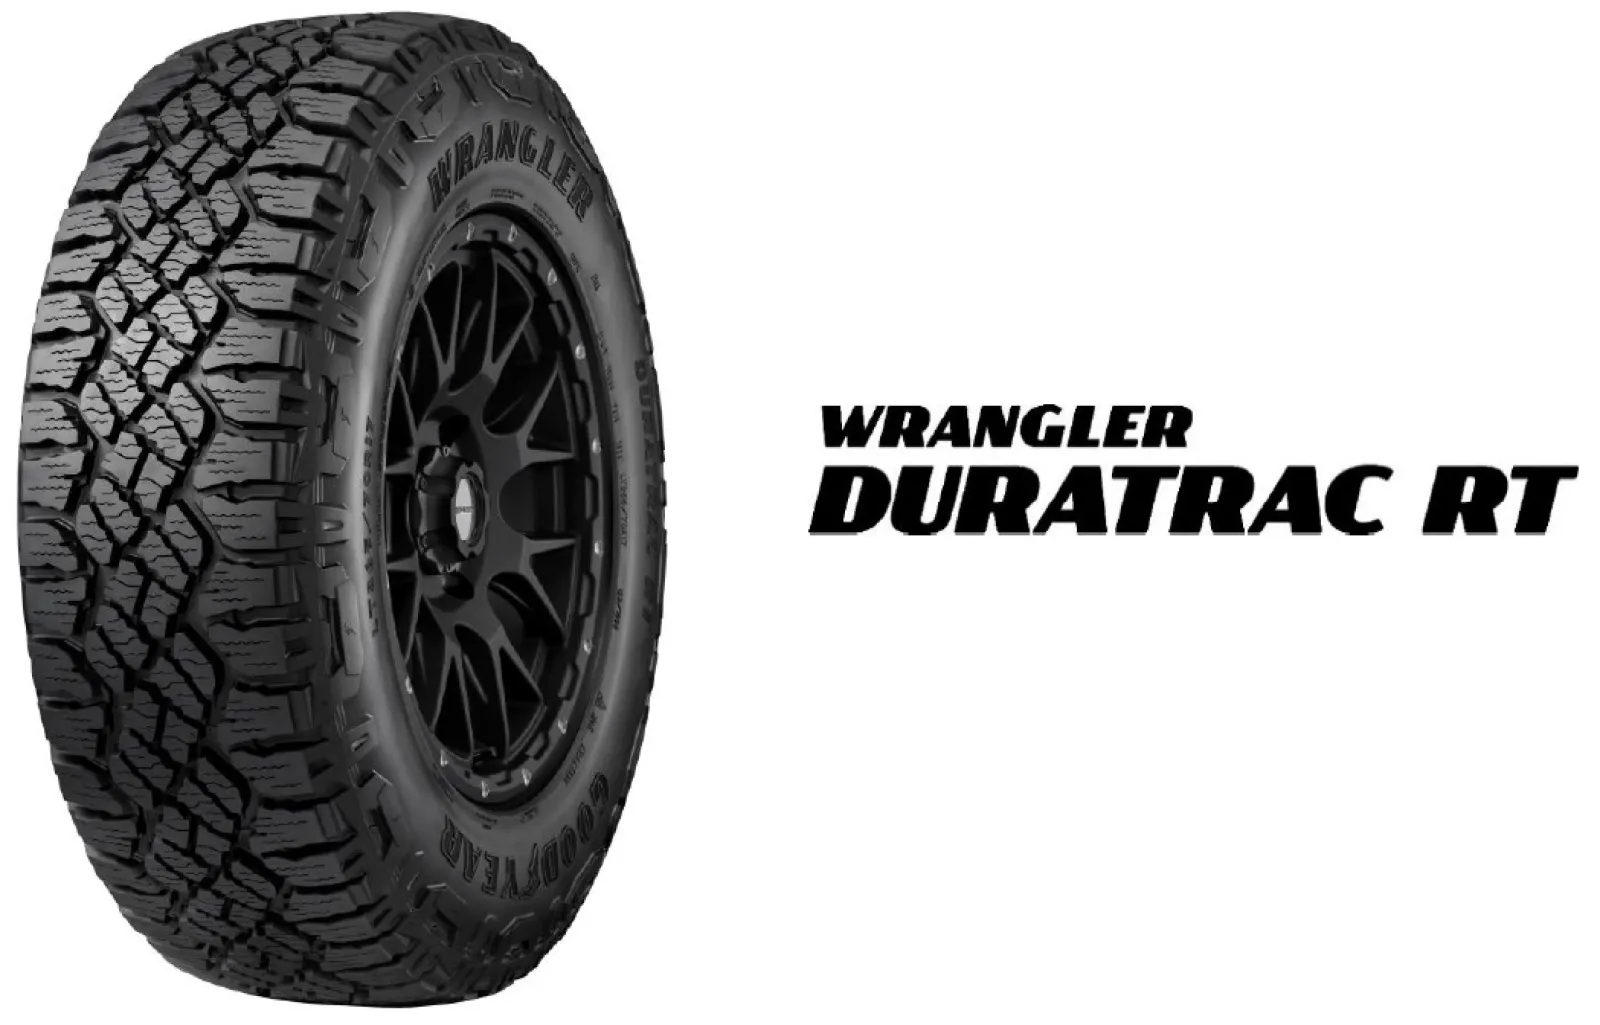 グッドイヤー、 ラギッドテレーンタイヤ「WRANGLER DURATRAC RT（ラングラー デュラトラック アールティー）」を発売 | カー用品 |  カーライフ・カー用品サイトMOBILA（モビラ）